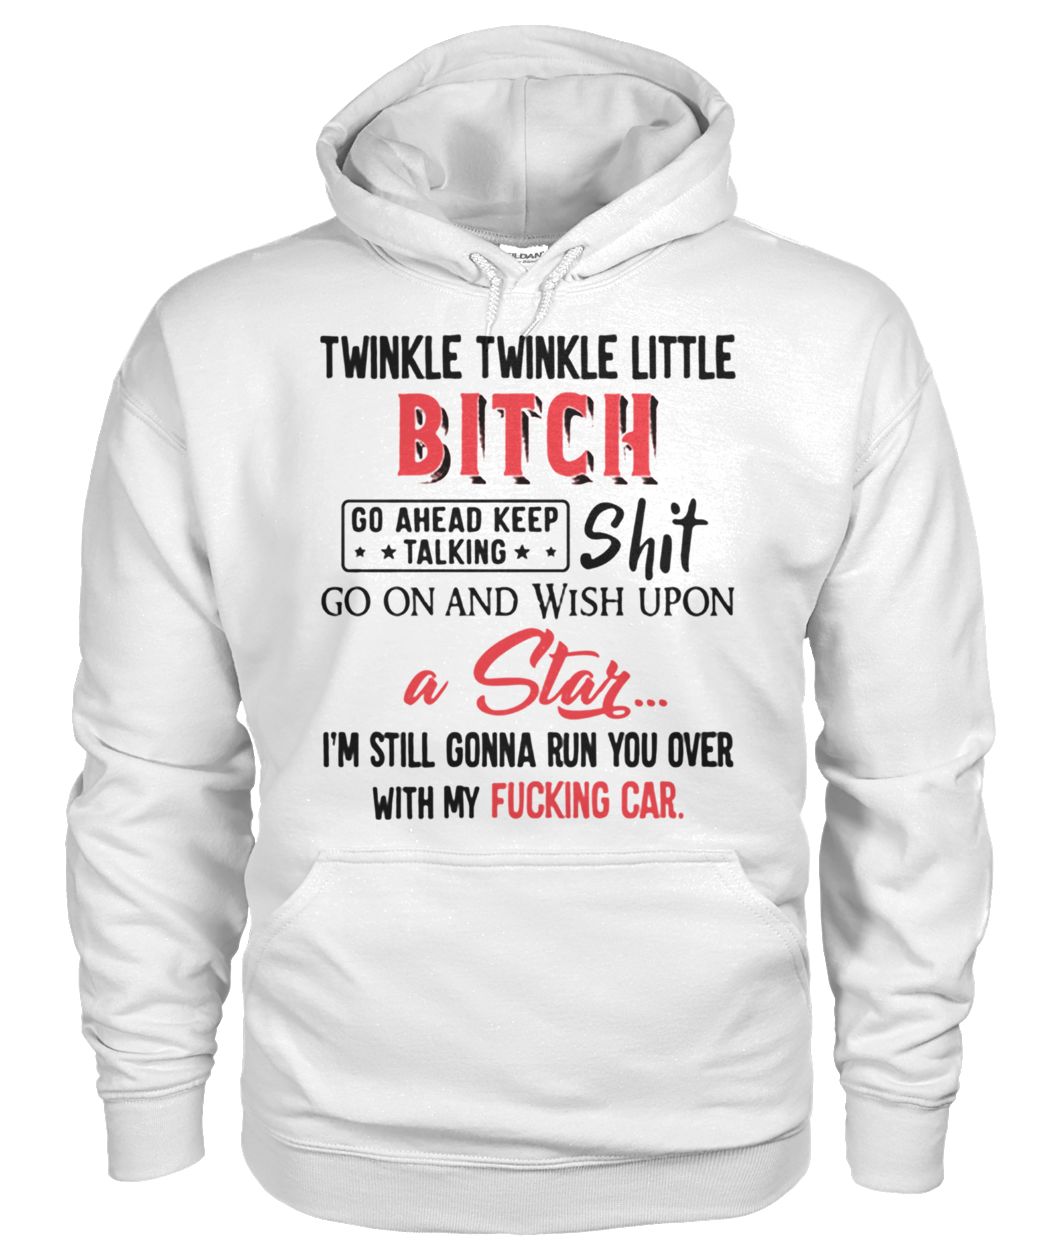 Twinkle twinkle little bitch go ahead keep talking shit gildan hoodie